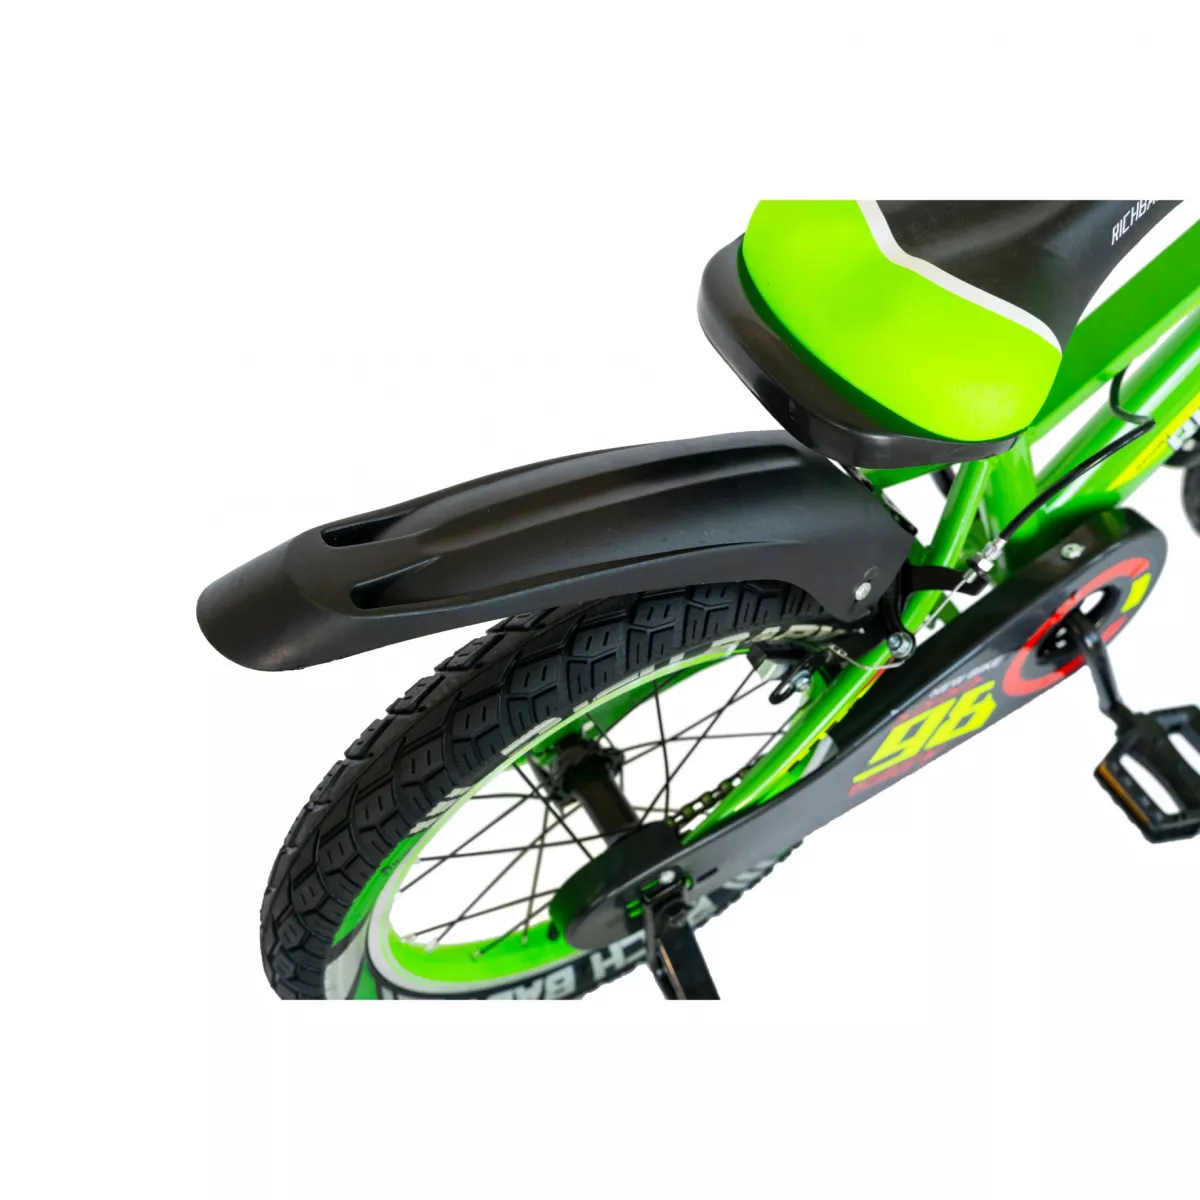 Bicicleta baieti Rich Baby R1607A, roata 16", C-Brake otel, roti ajutatoare cu LED, 4-6 ani, verde/negru